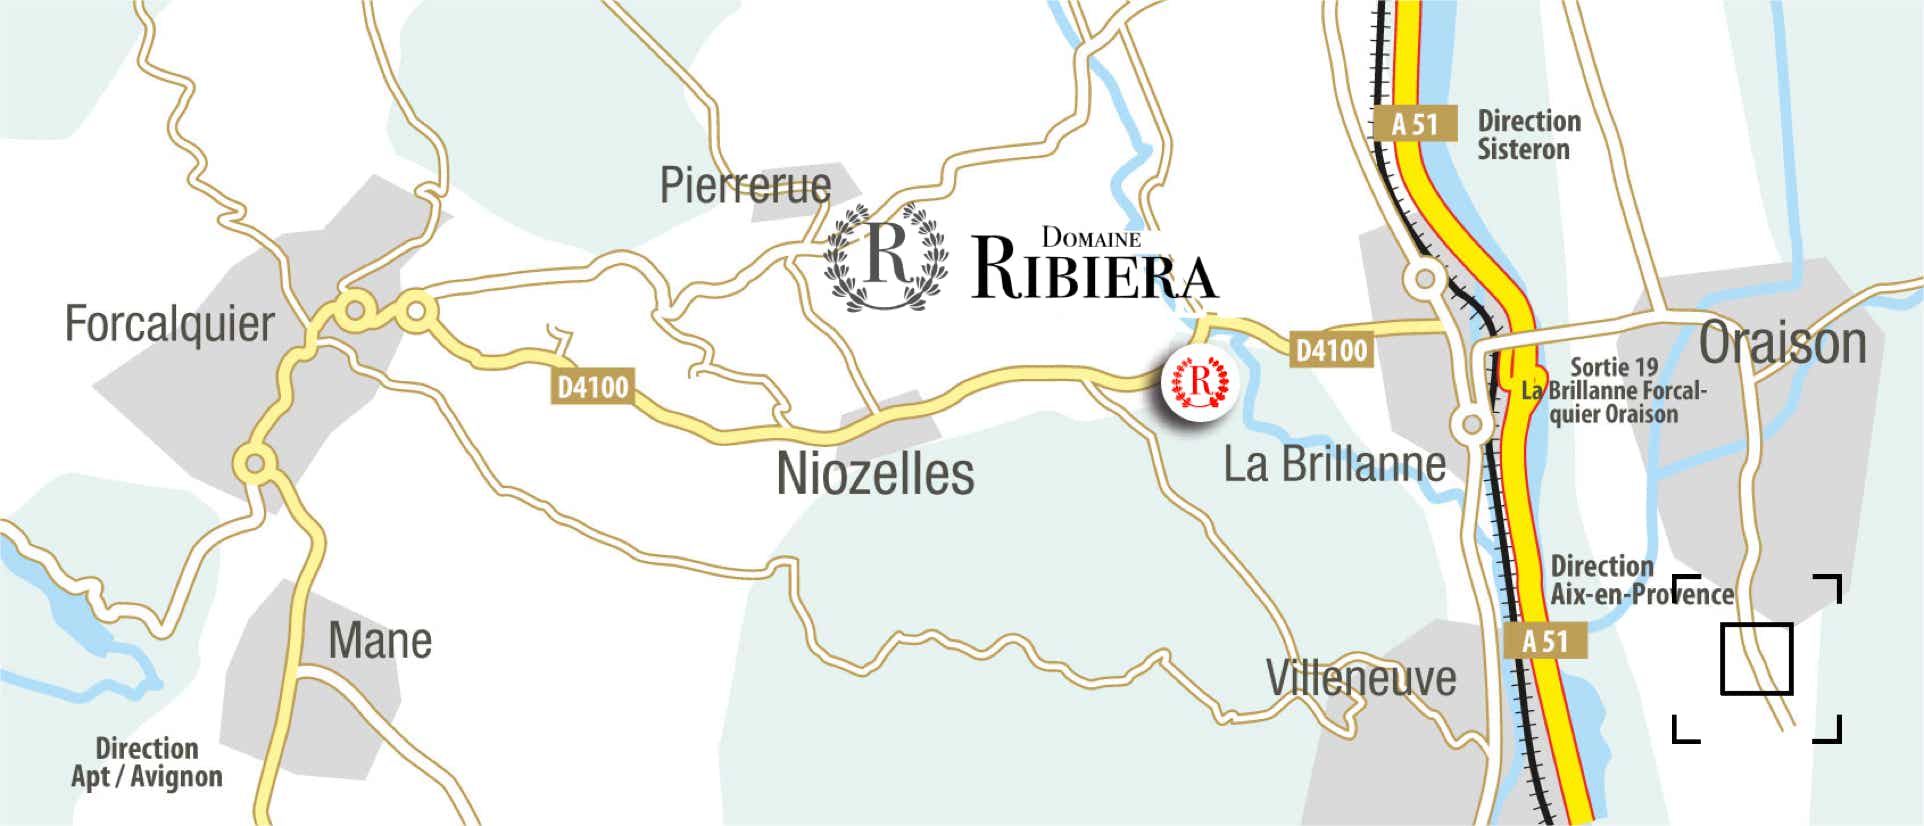 Accès Domaine Ribiera entre forcalquier et Oraison